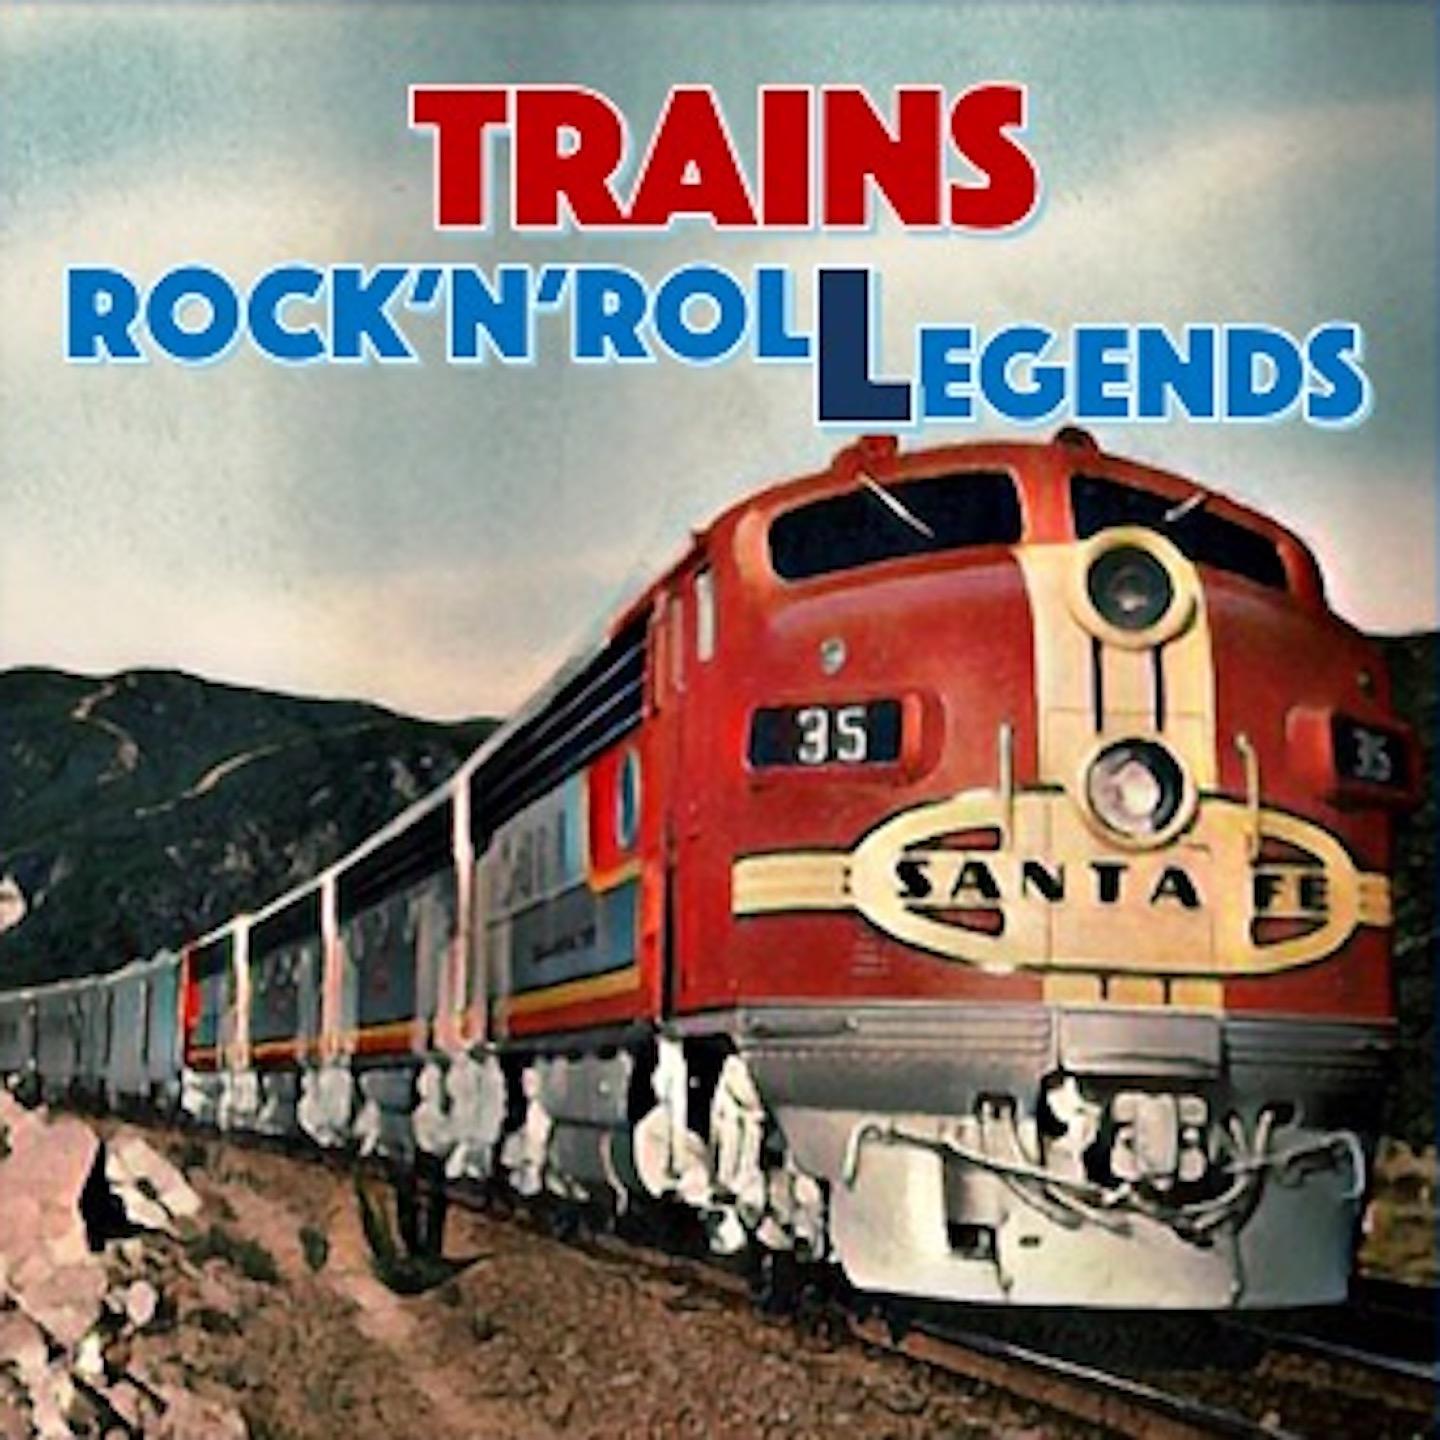 Trains (50 tracks dedicated to trains)